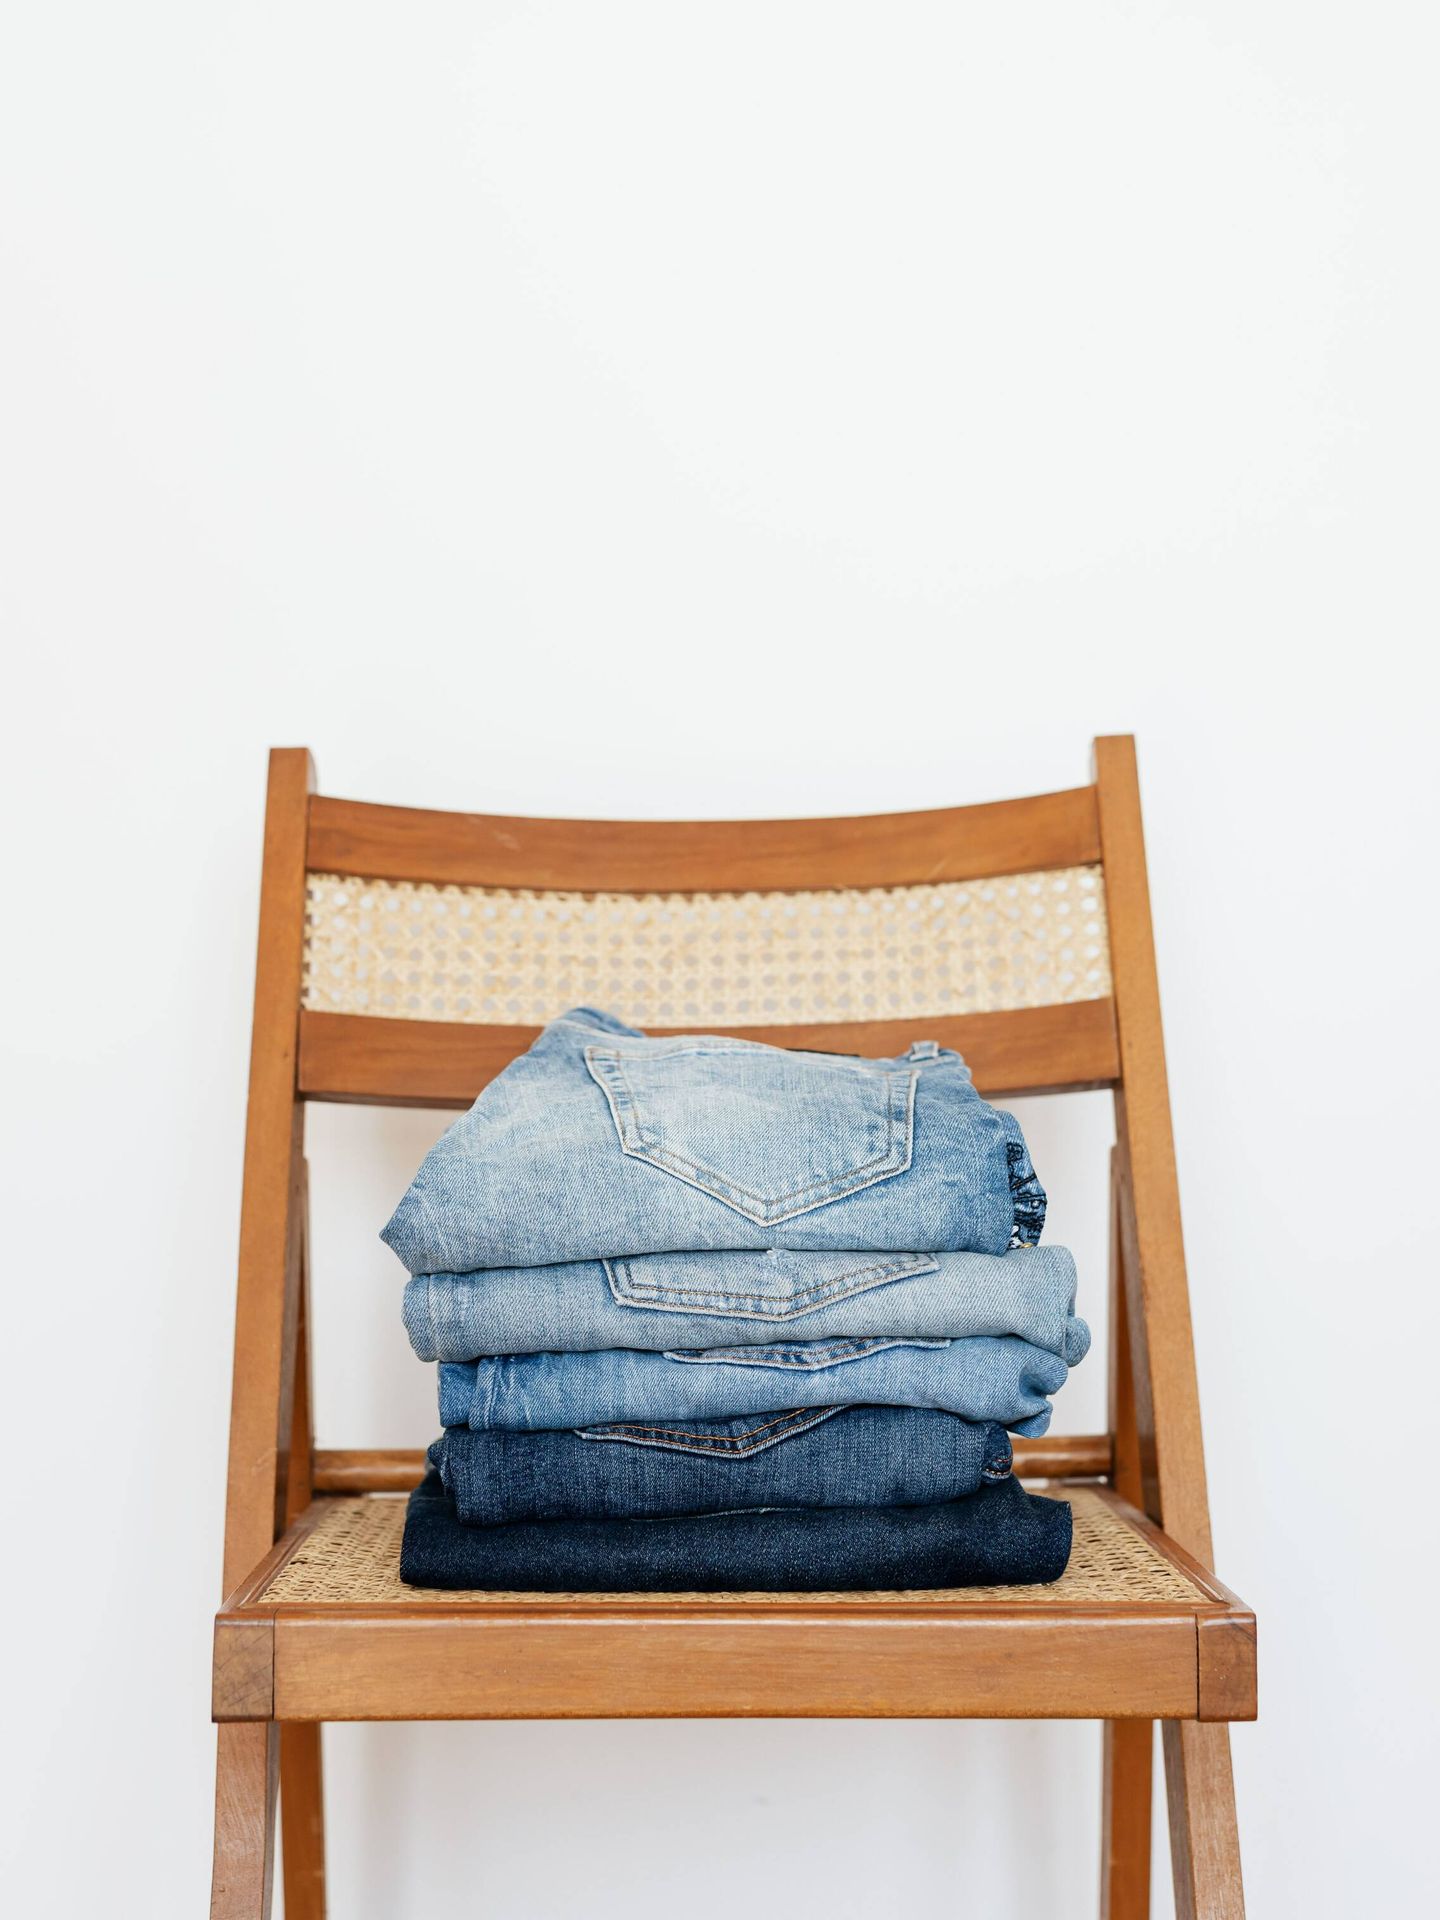 Doblar la ropa es otra tarea que pueden hacer. (Pexels/ Karolina Grabowska)